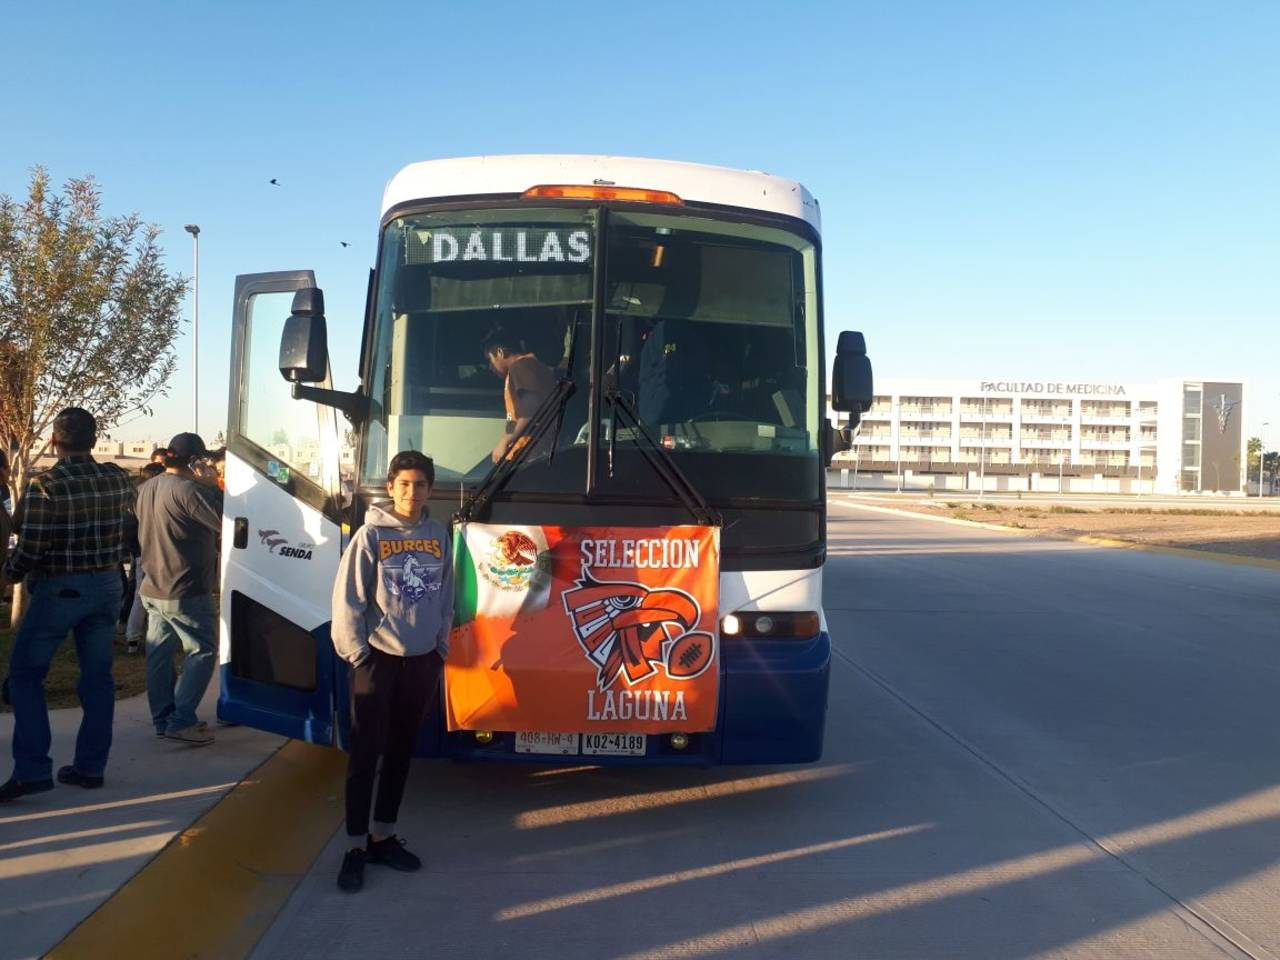 Los jugadores viajan con muchas ilusiones a Dallas, Texas. Selección Laguna sale  al International Bowl